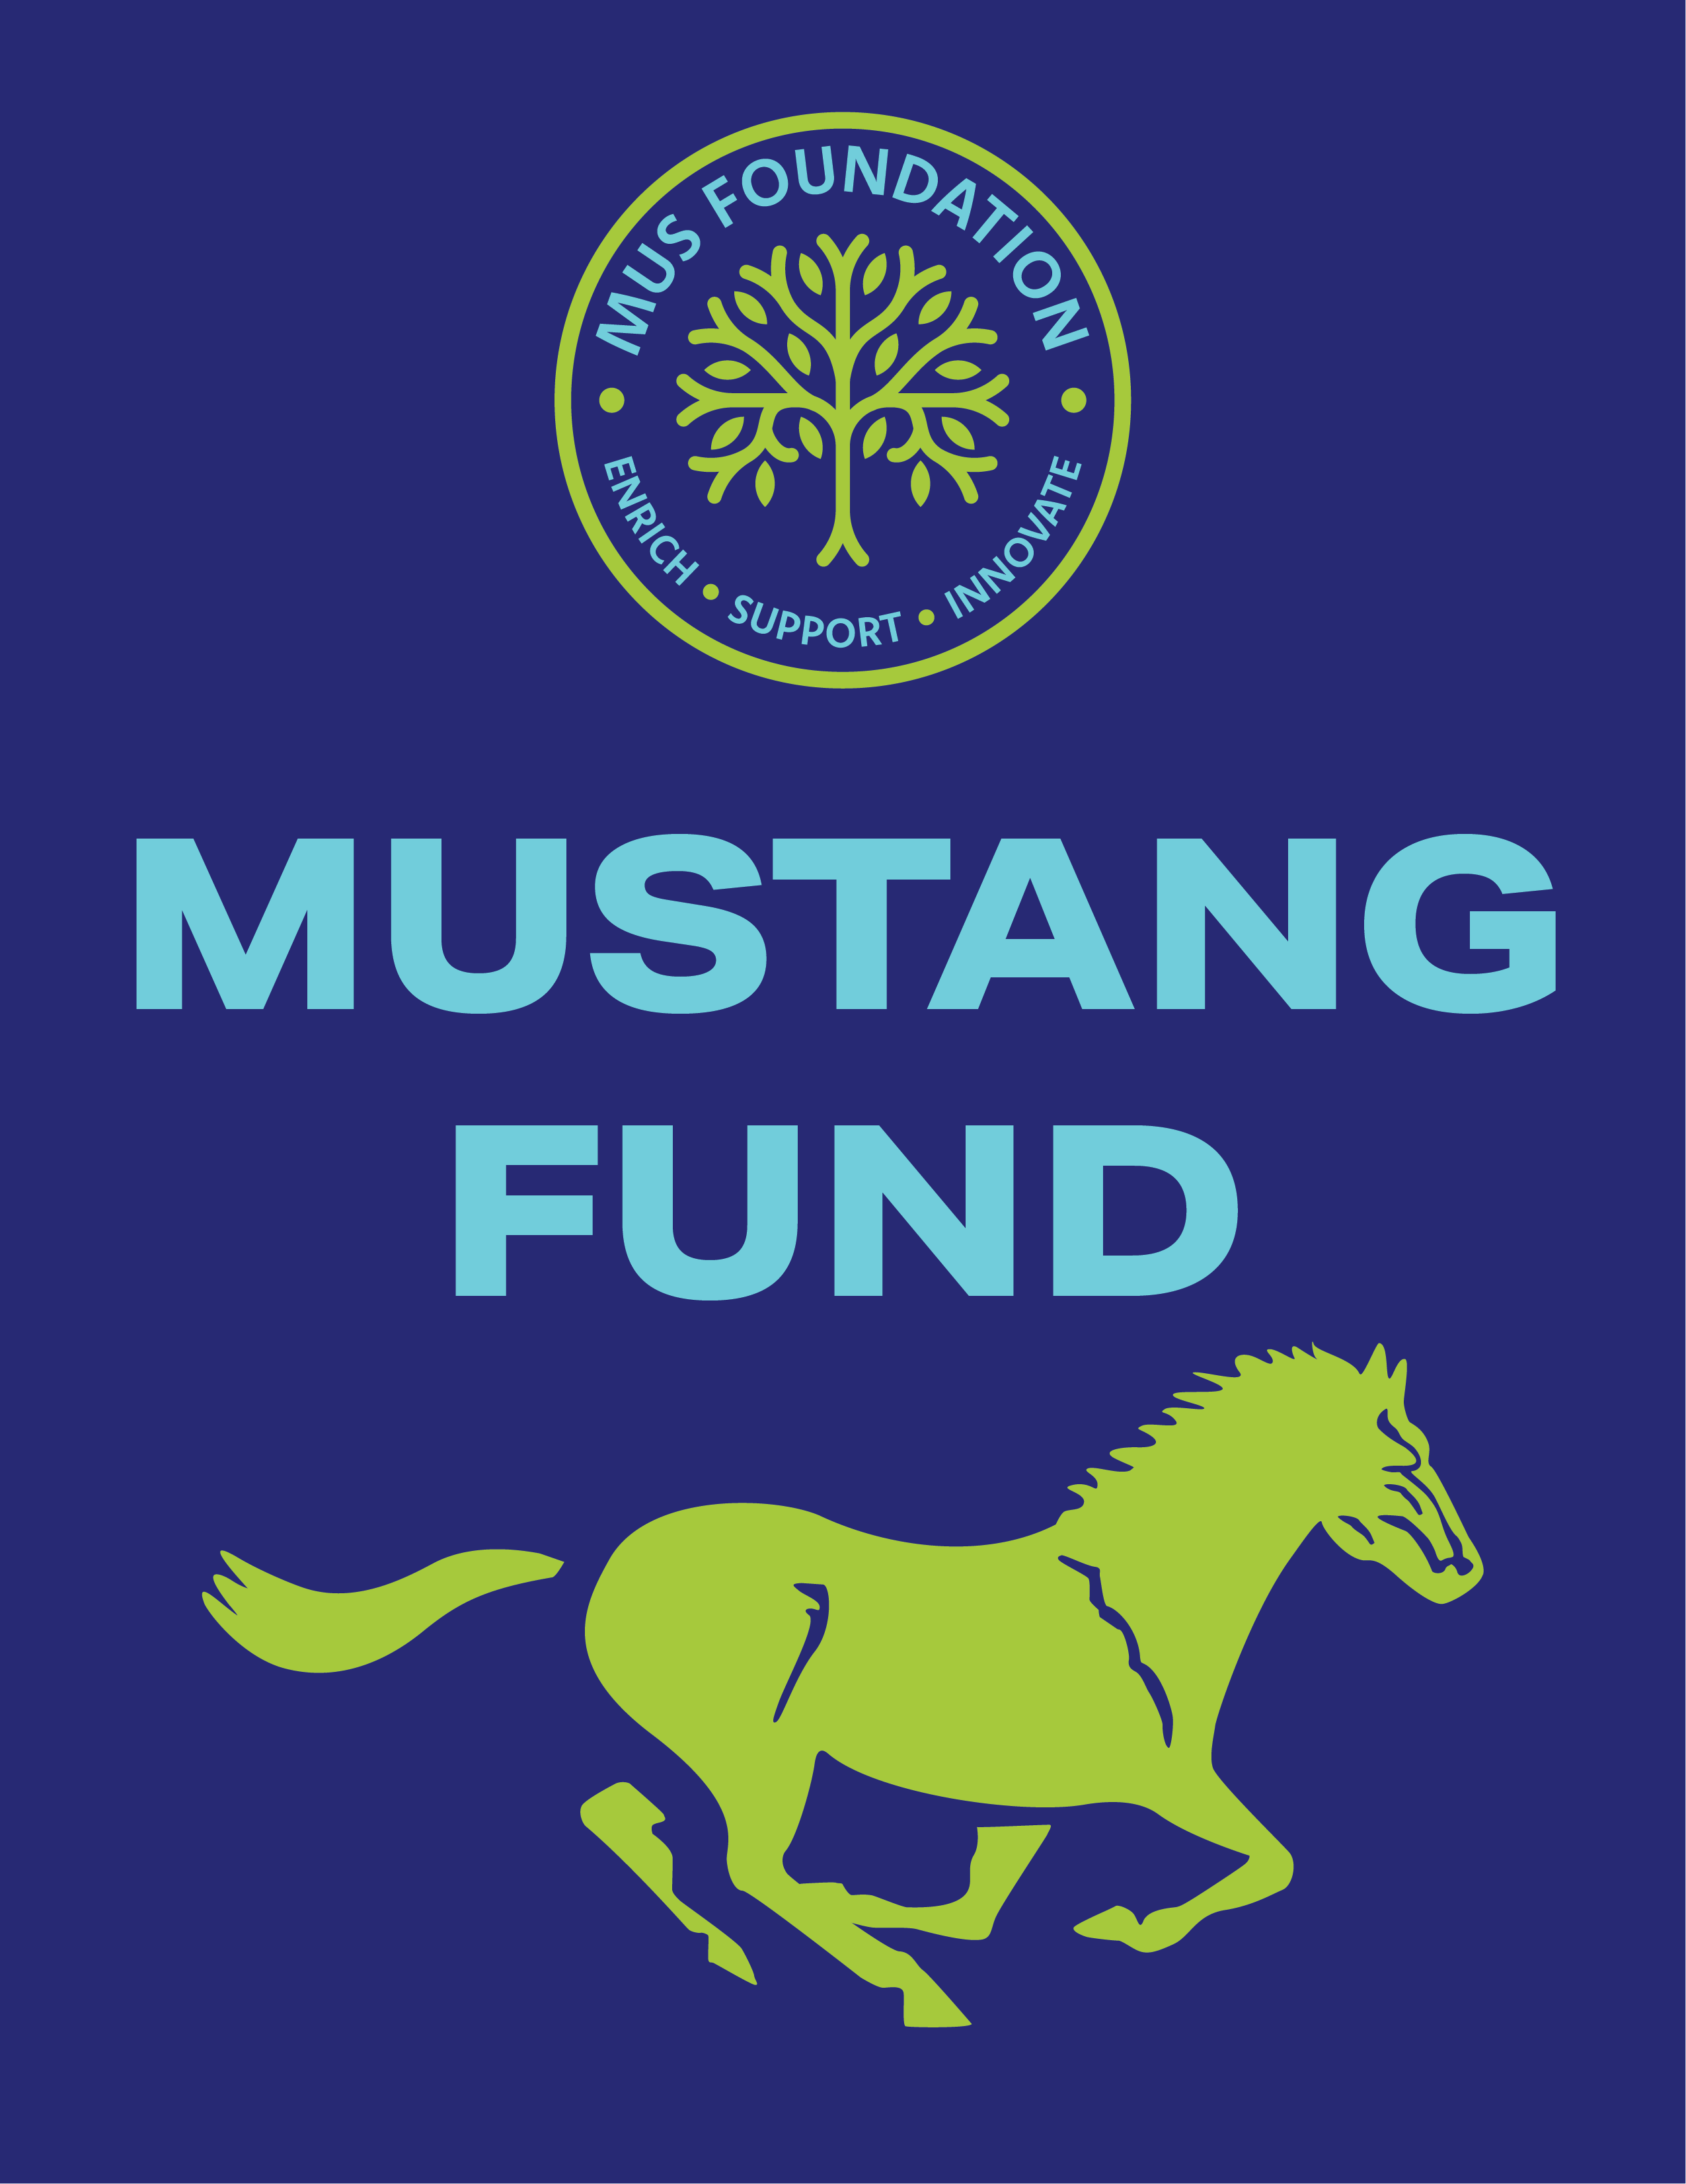 Mustang Fund Image